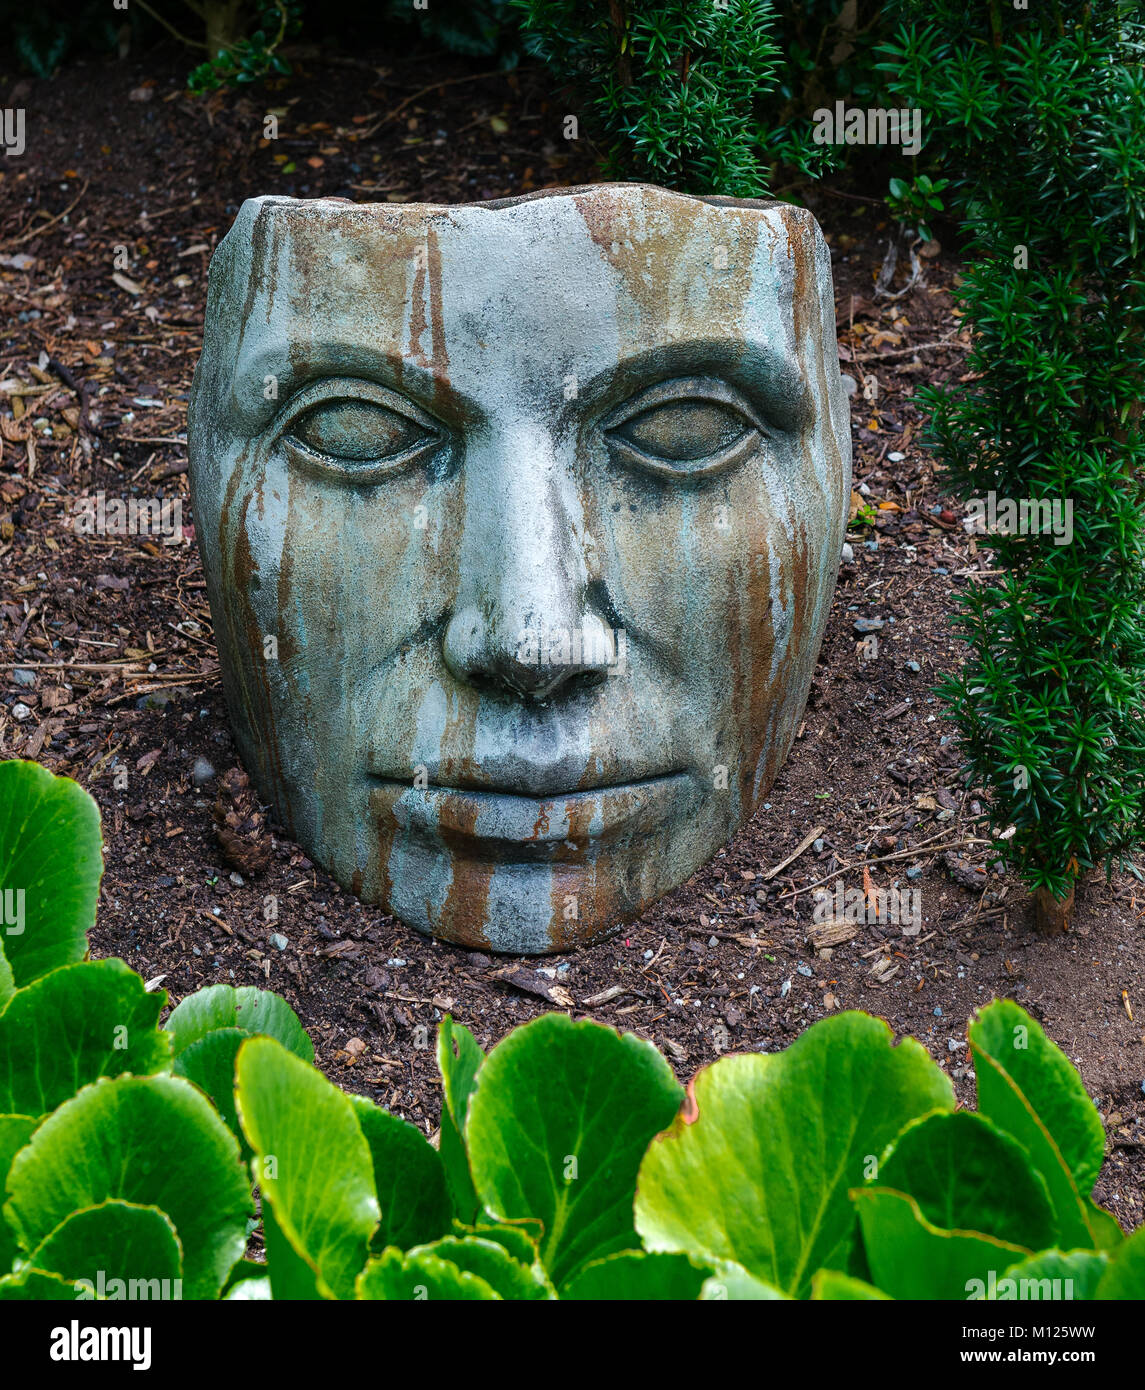 Masque de béton dans un jardin que l'art de jardin Banque D'Images